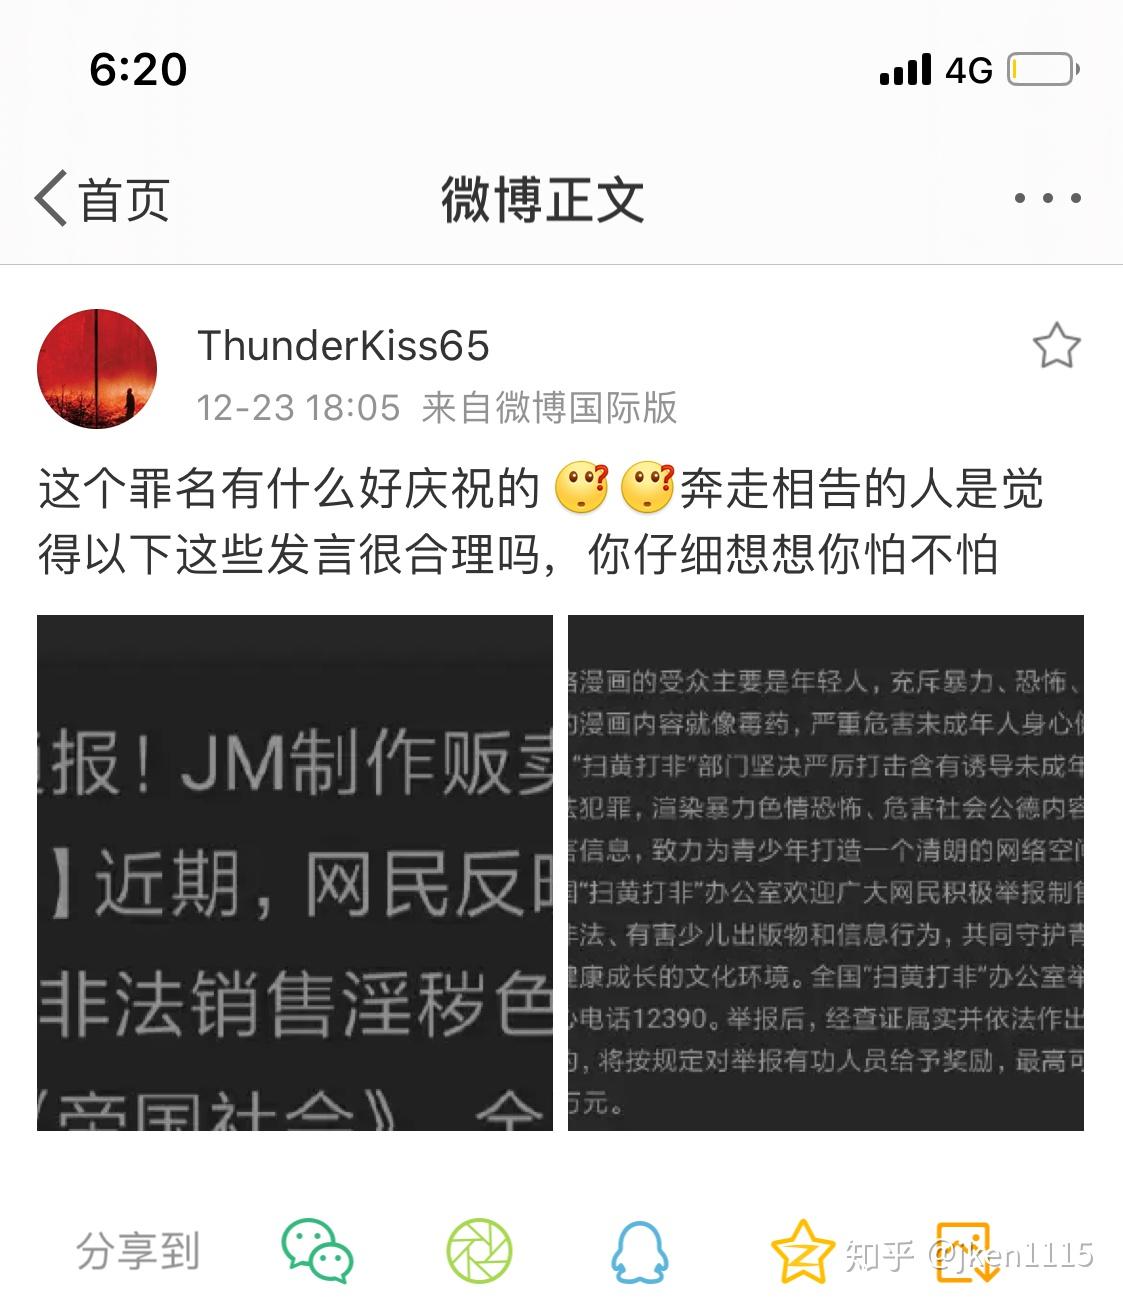 如何看待《jm帝国》作者蒋明辉因涉嫌制作淫秽物品牟利罪被沈阳公安